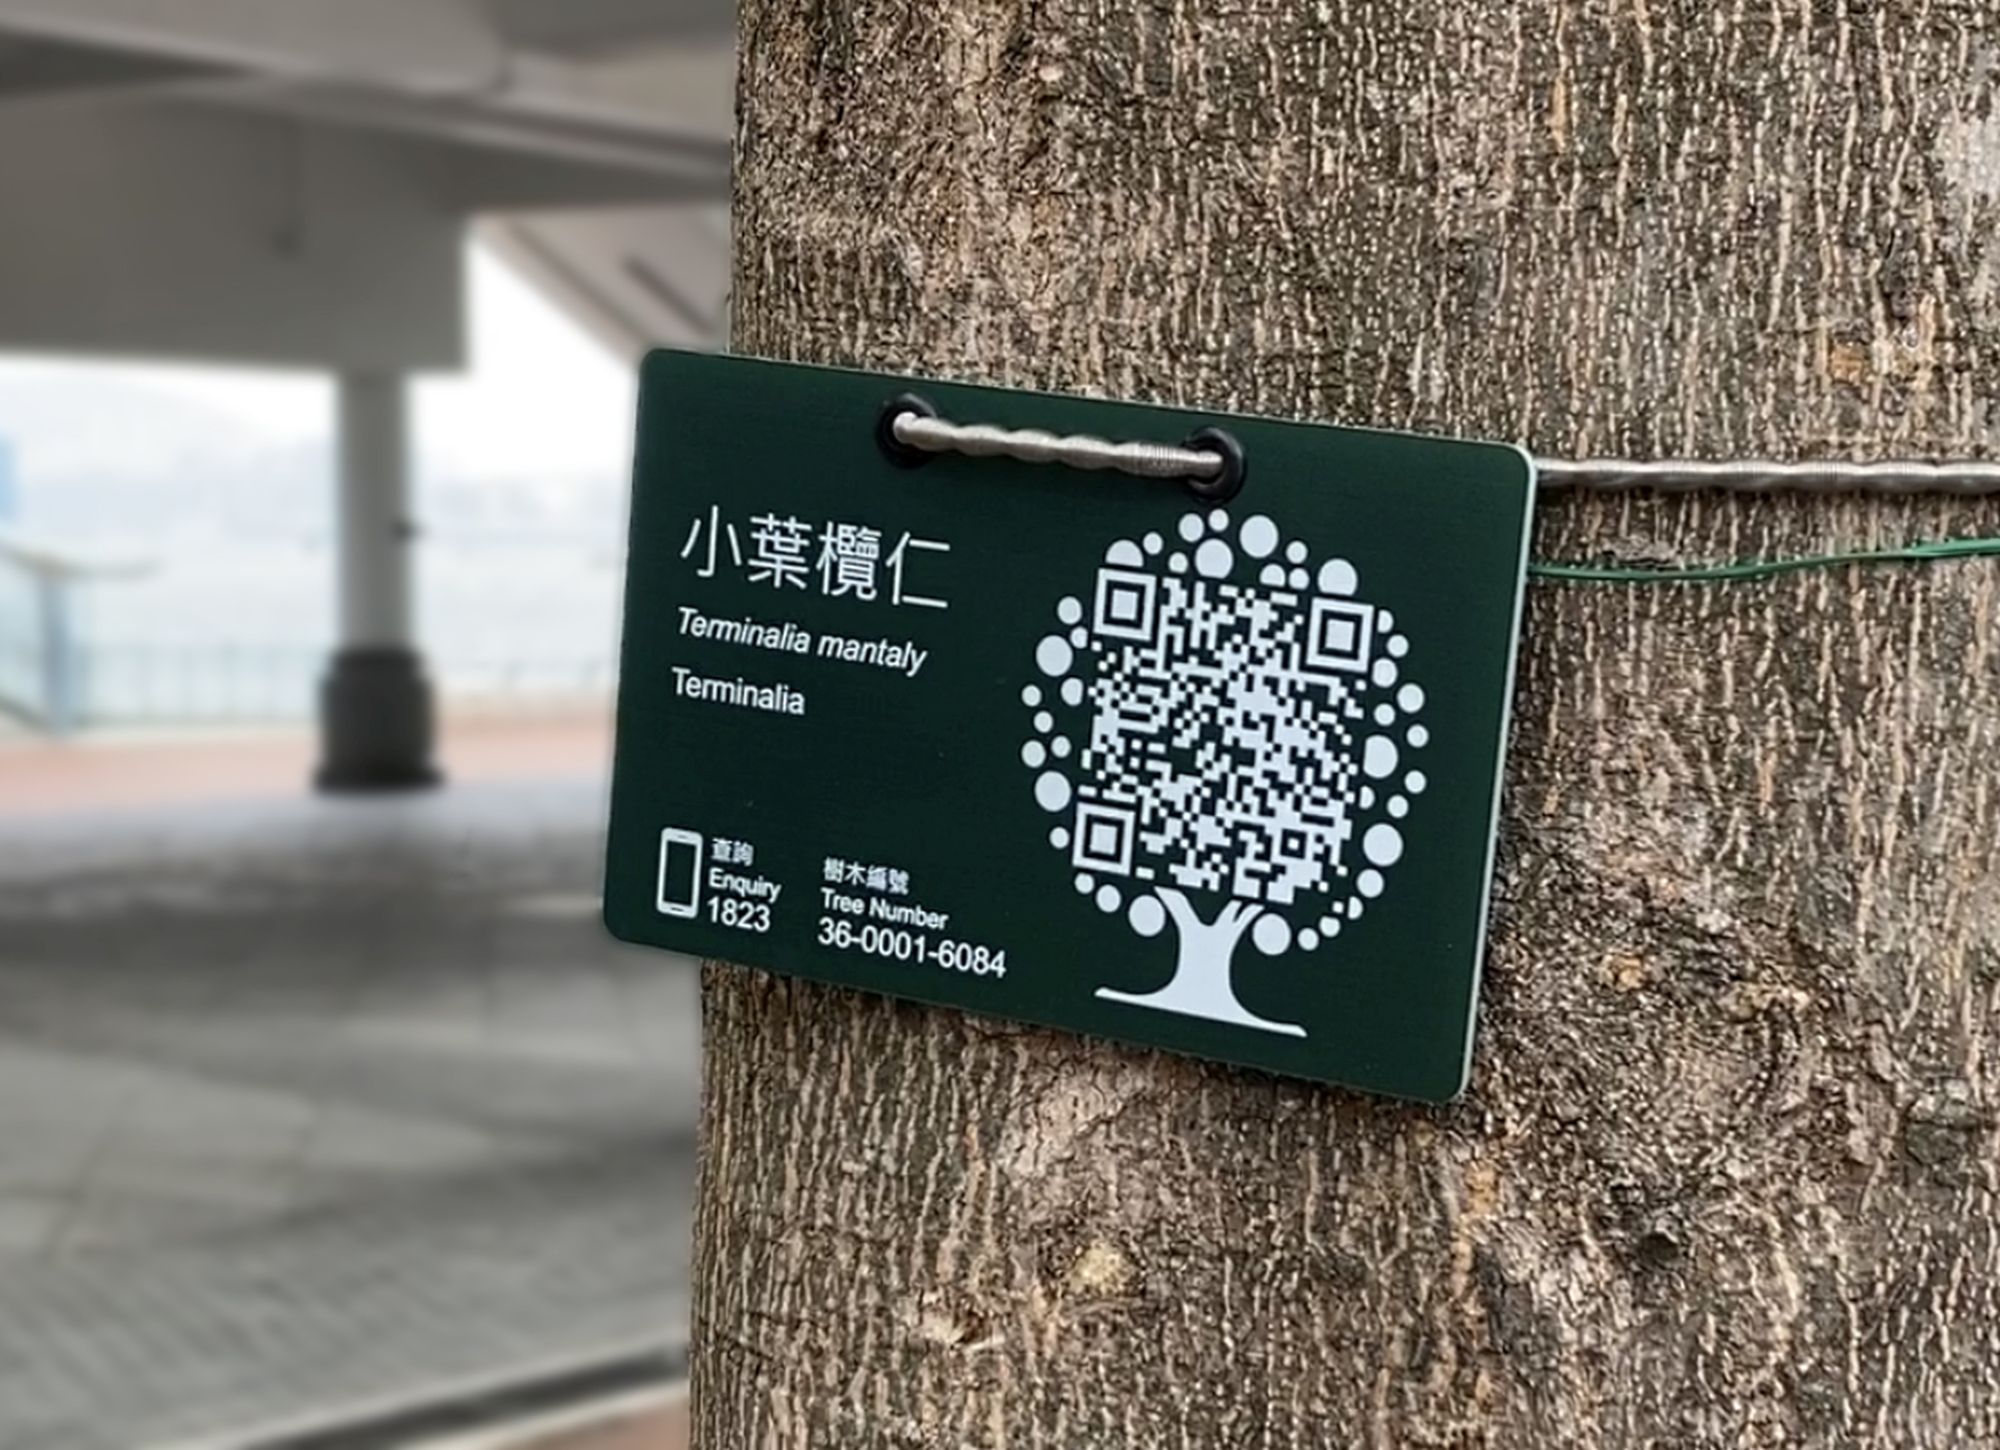 二維條碼樹木標籤提供樹木基本資料及方便市民報告問題樹木。